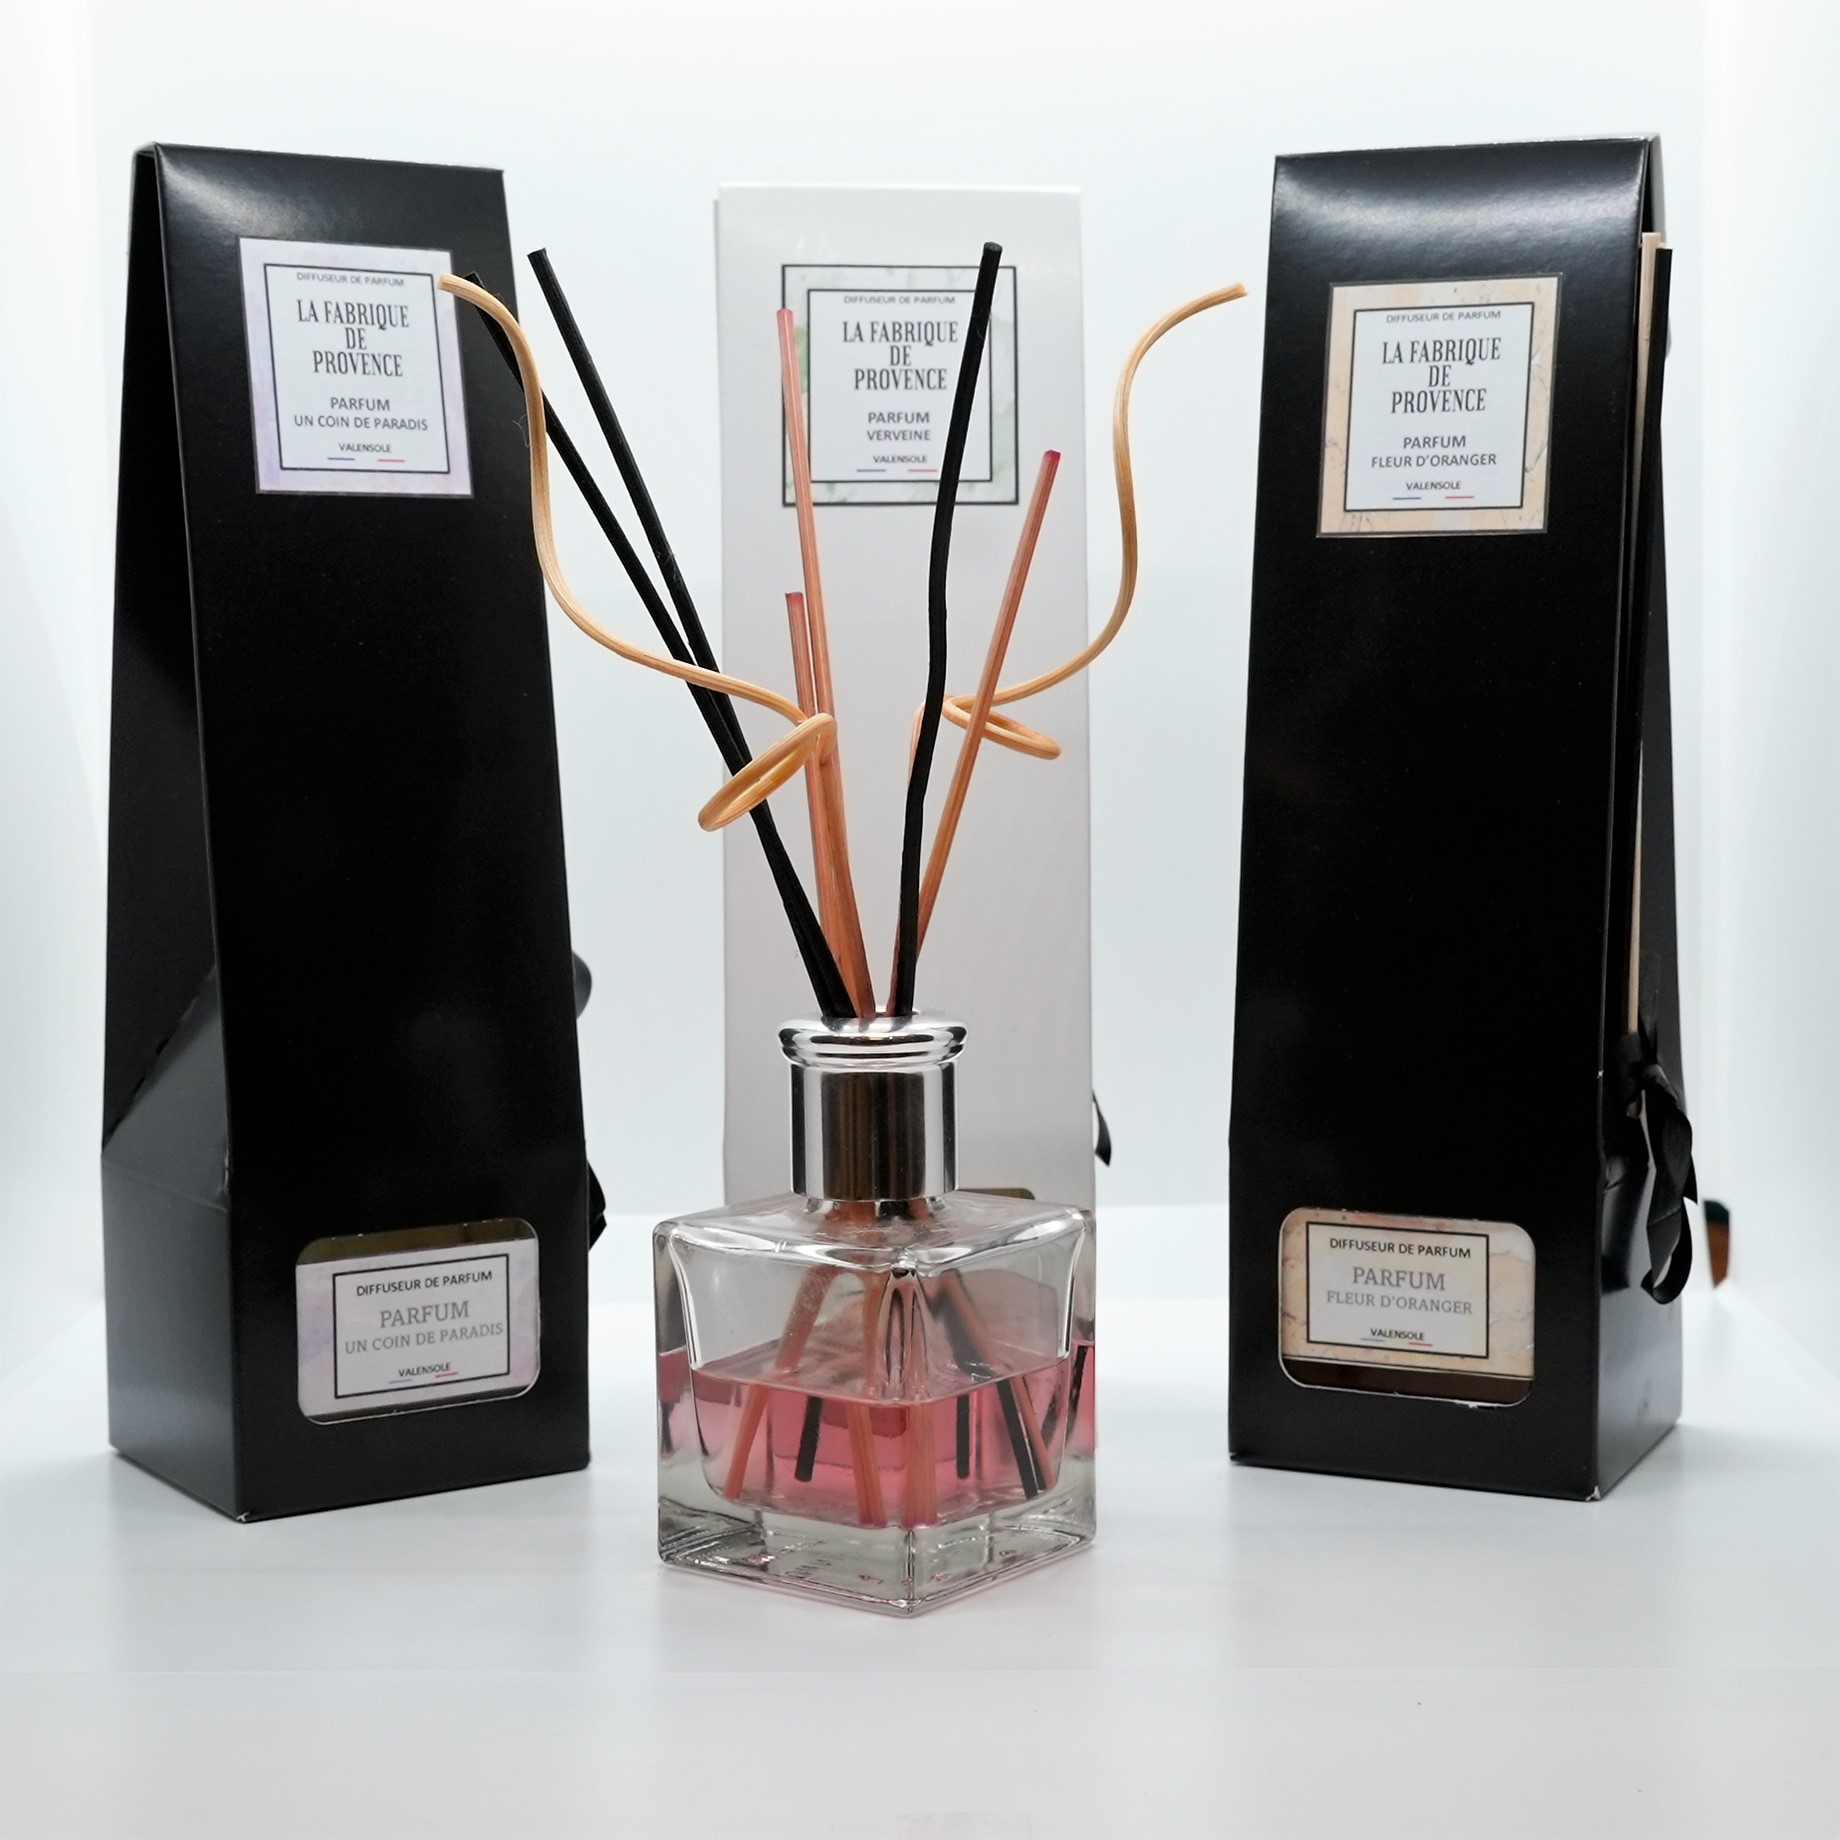 Les diffuseur 100% écologiques de parfum batonnet - Diffuseur de